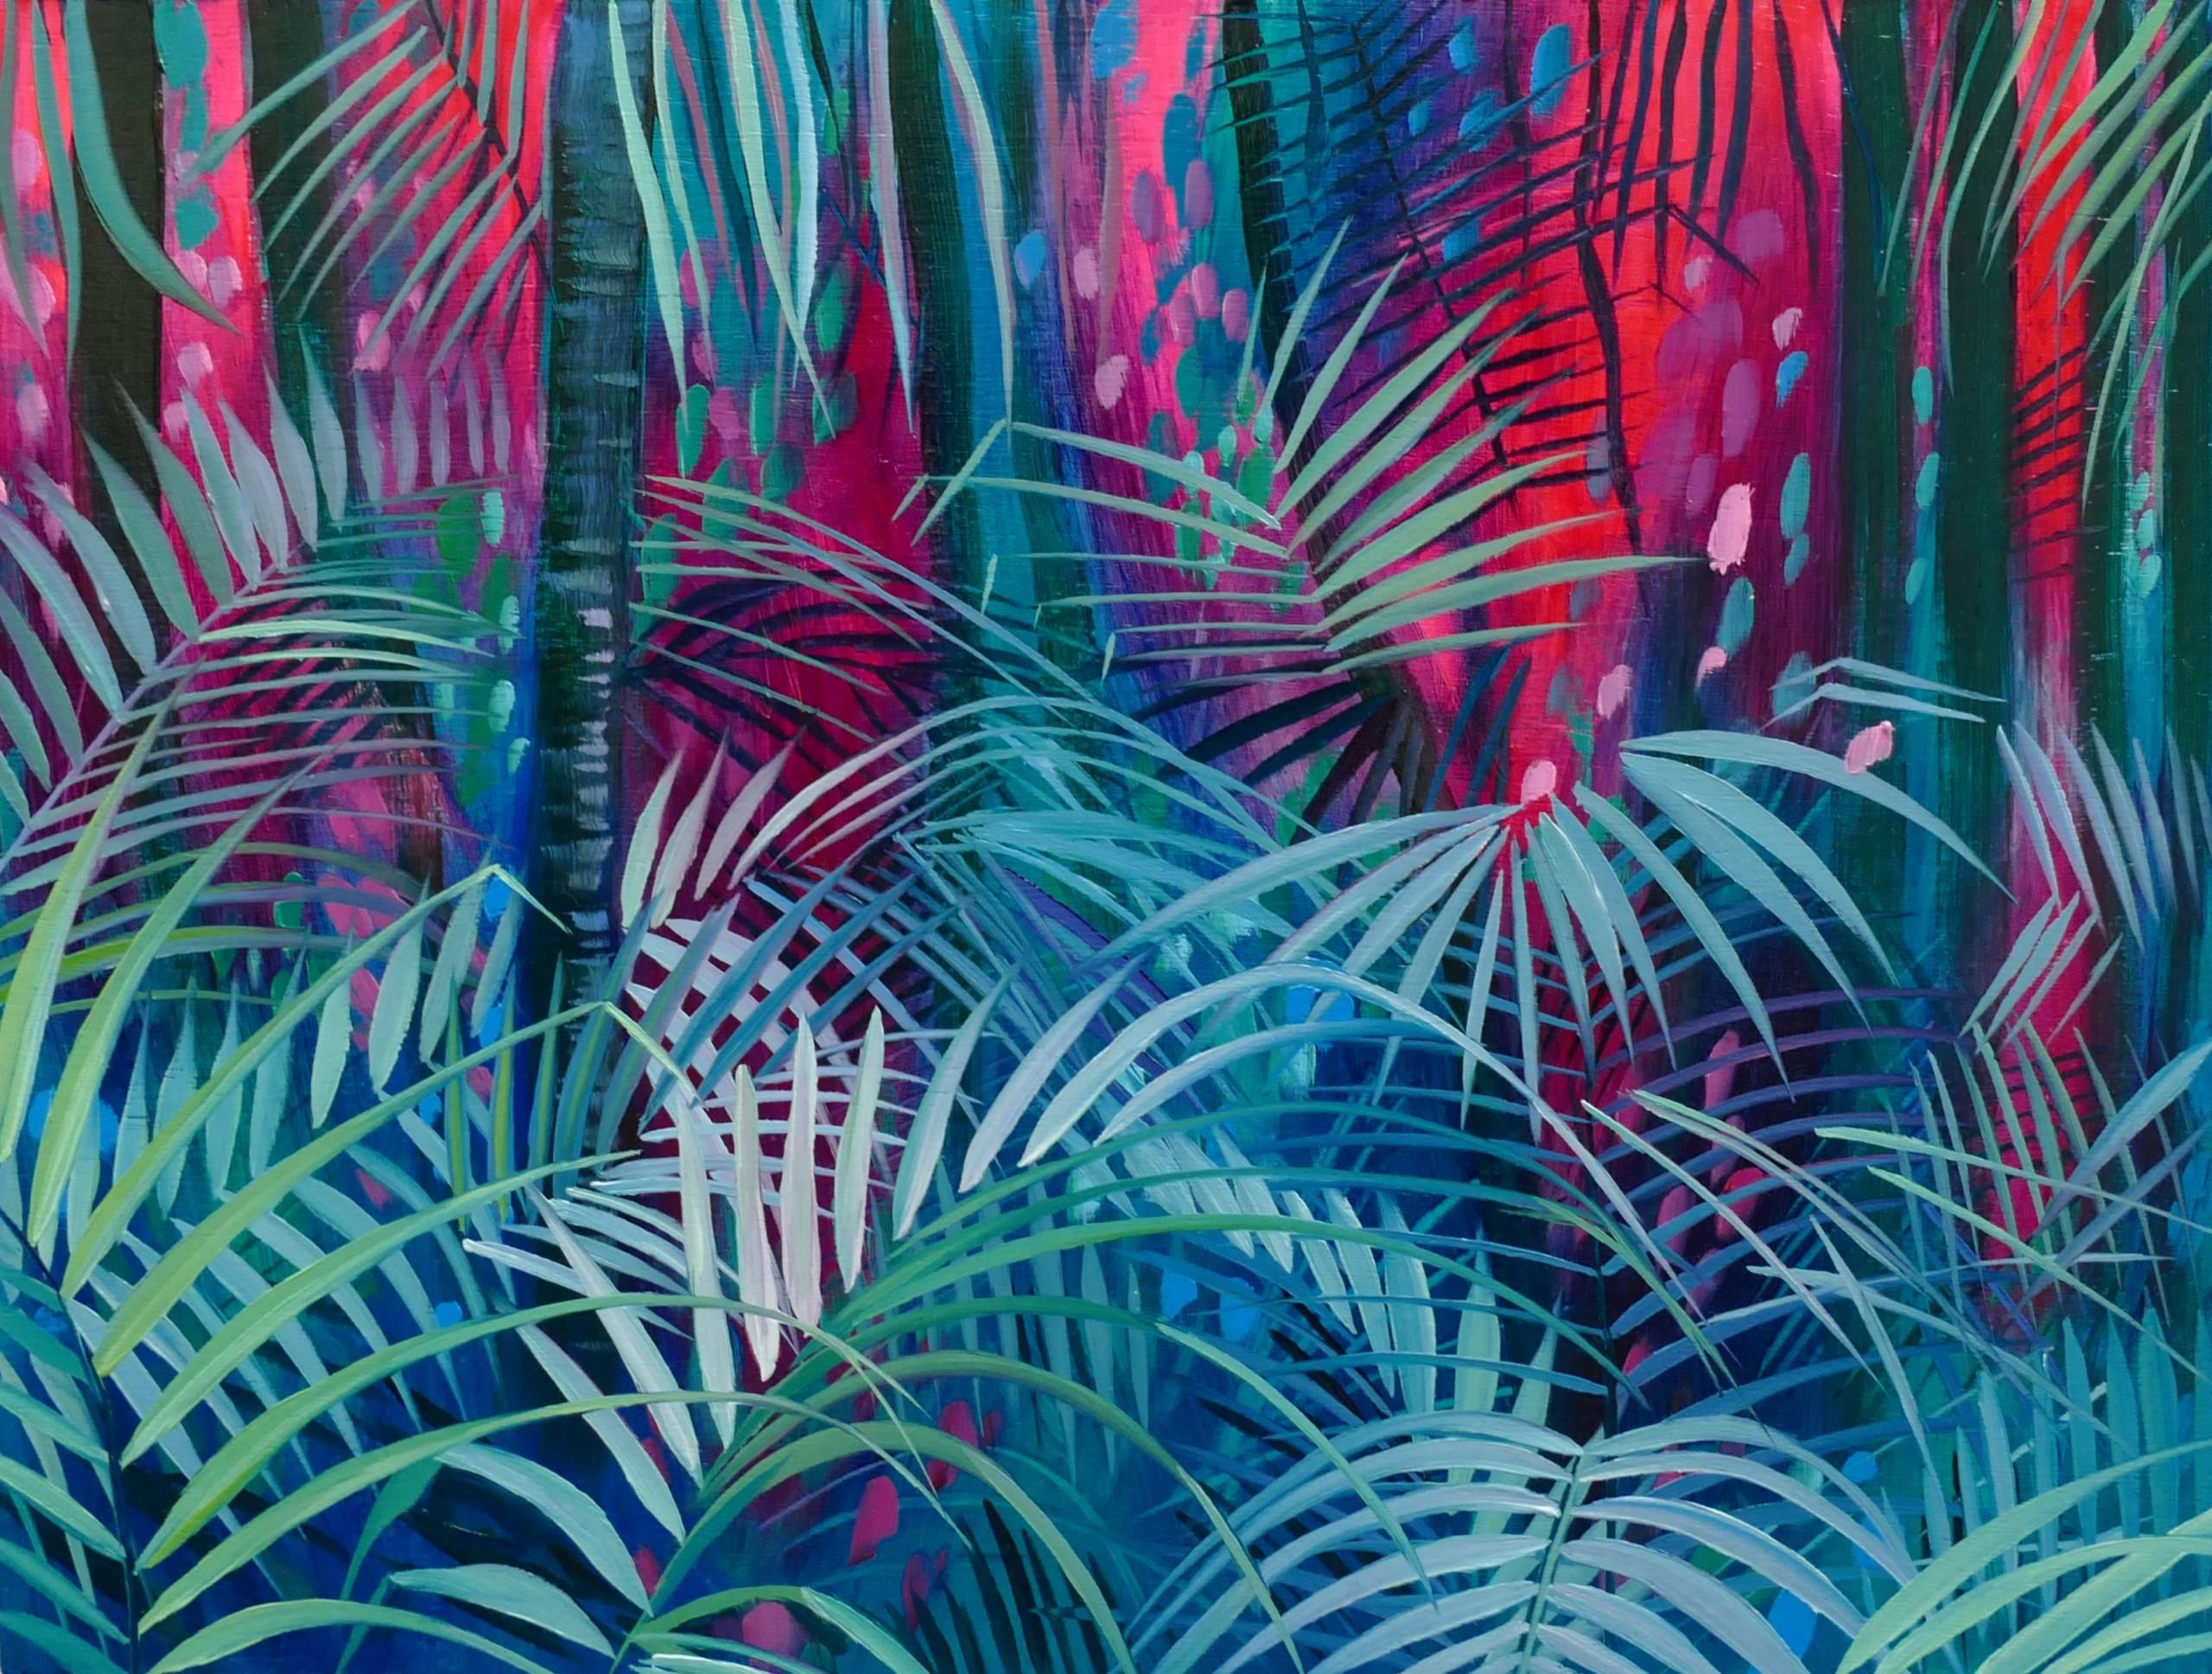 Dschungel Paradies, Landschaftskunst, kühnes Original-Ölgemälde, gerahmtes Kunstwerk